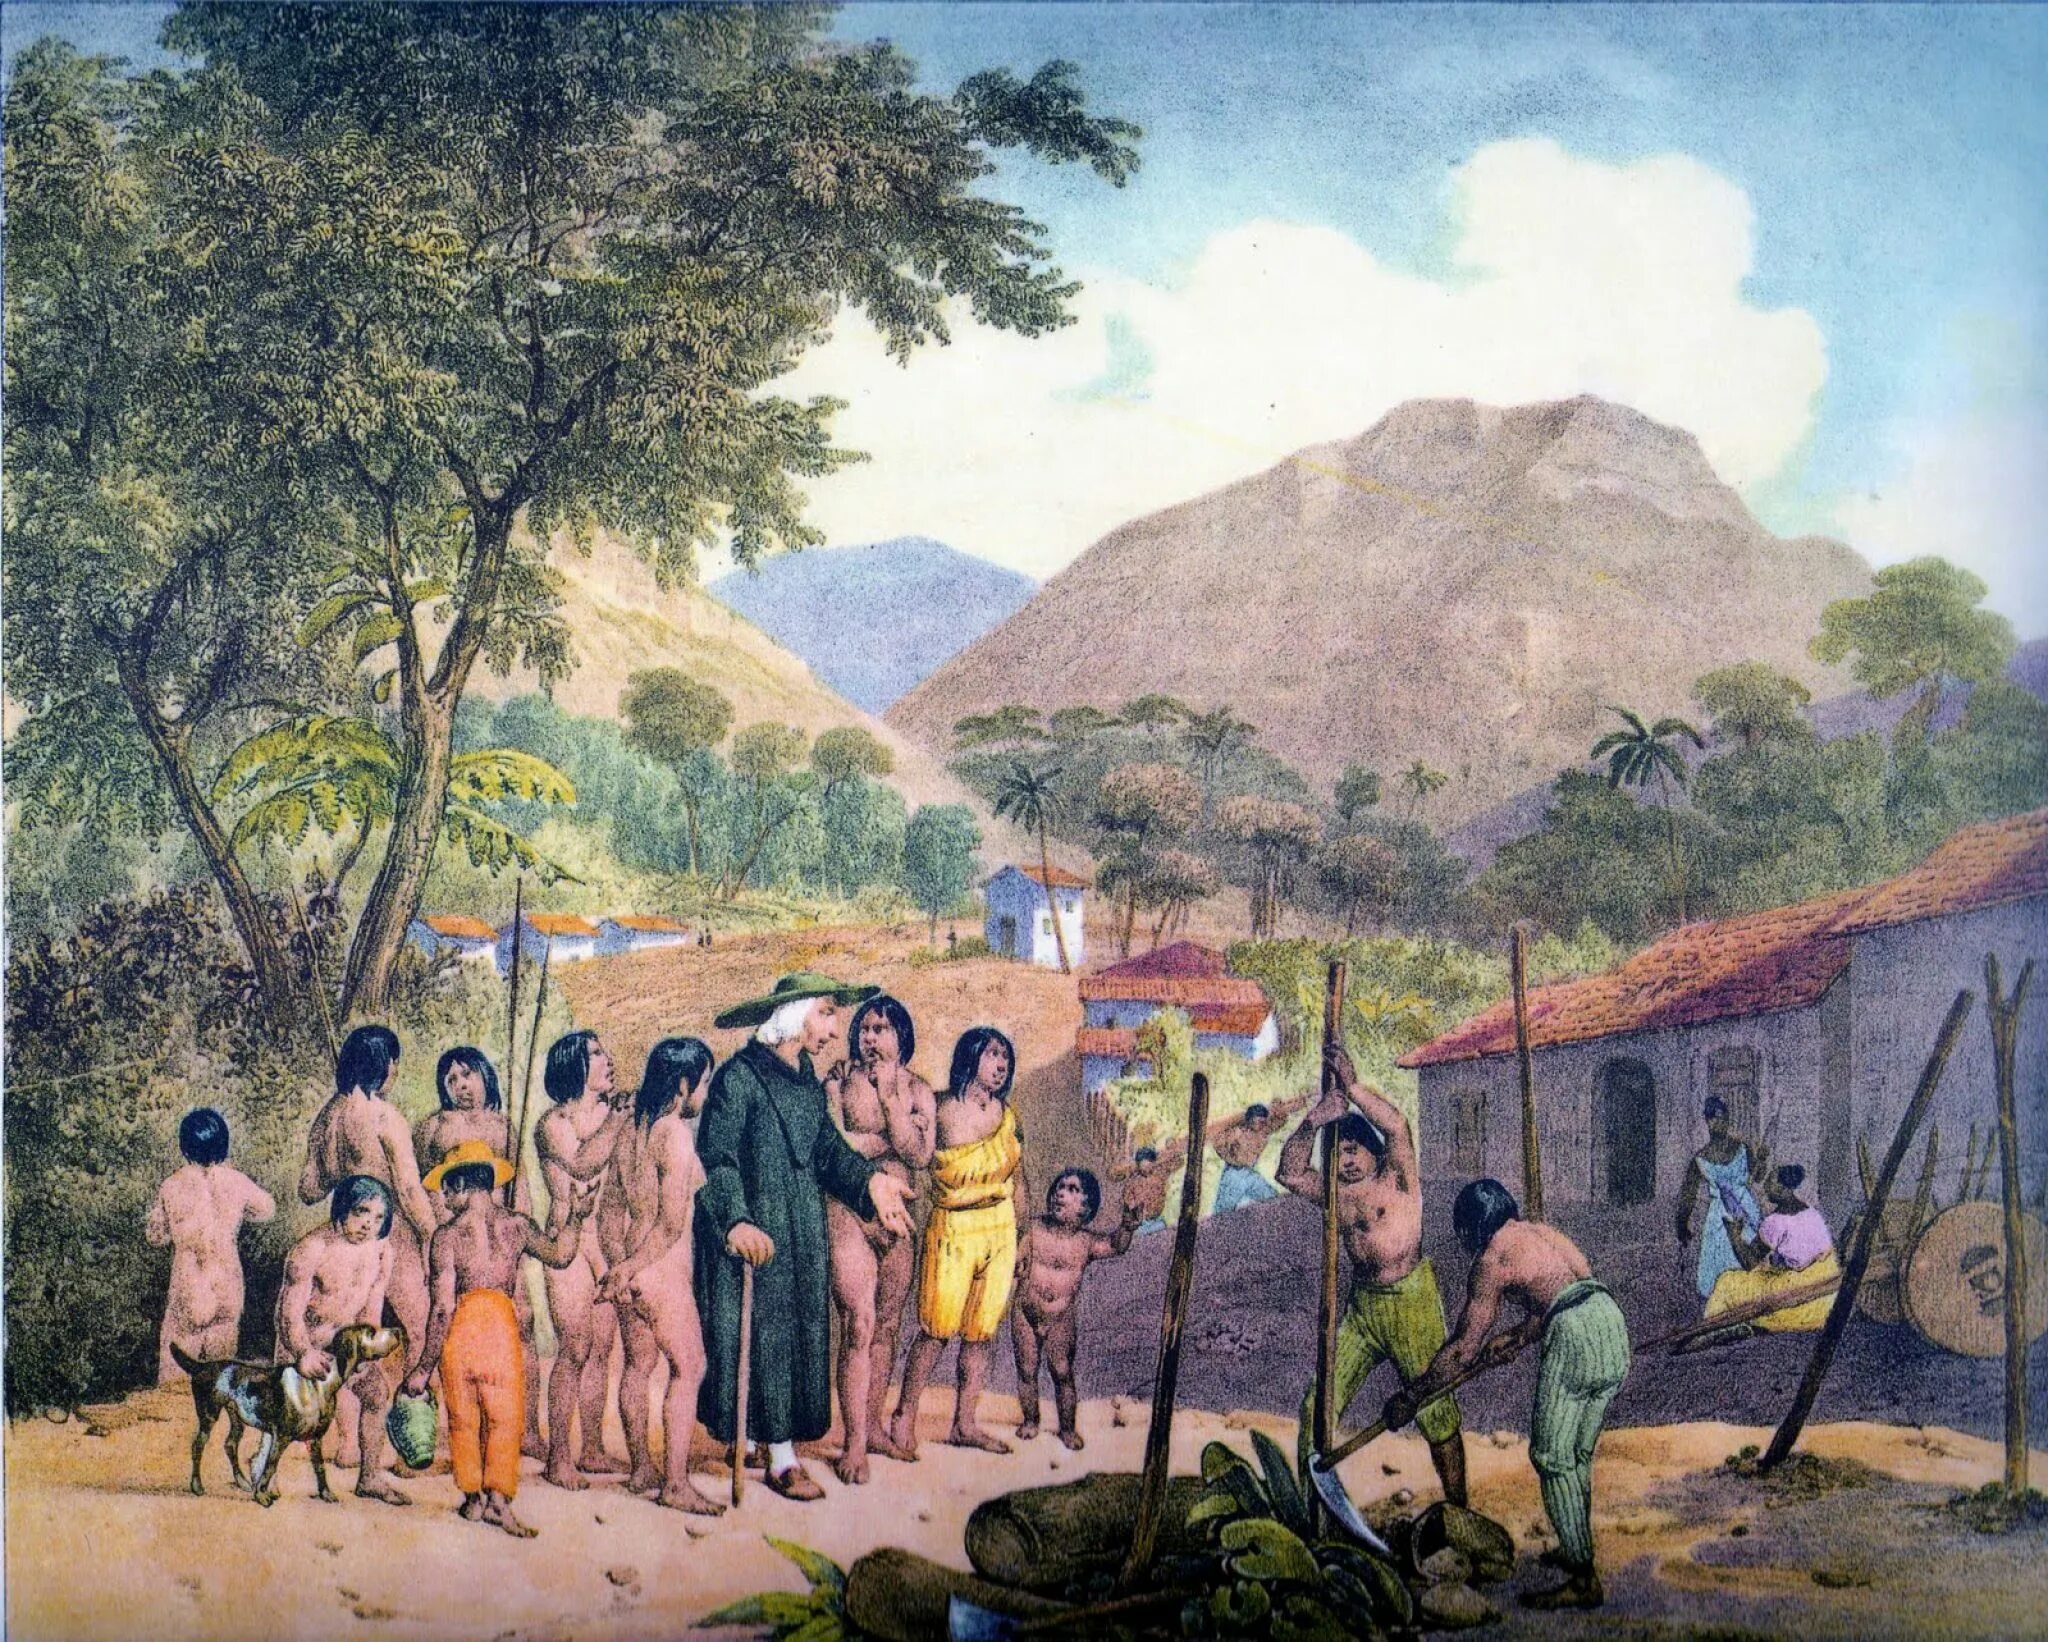 Сельское хозяйство Латинской Америки 19 век. Колония испанцев в Латинской Америке 18 век. Колонизация Латинской Америки 19 век. Колонизация индейцев в Латинской Америке.